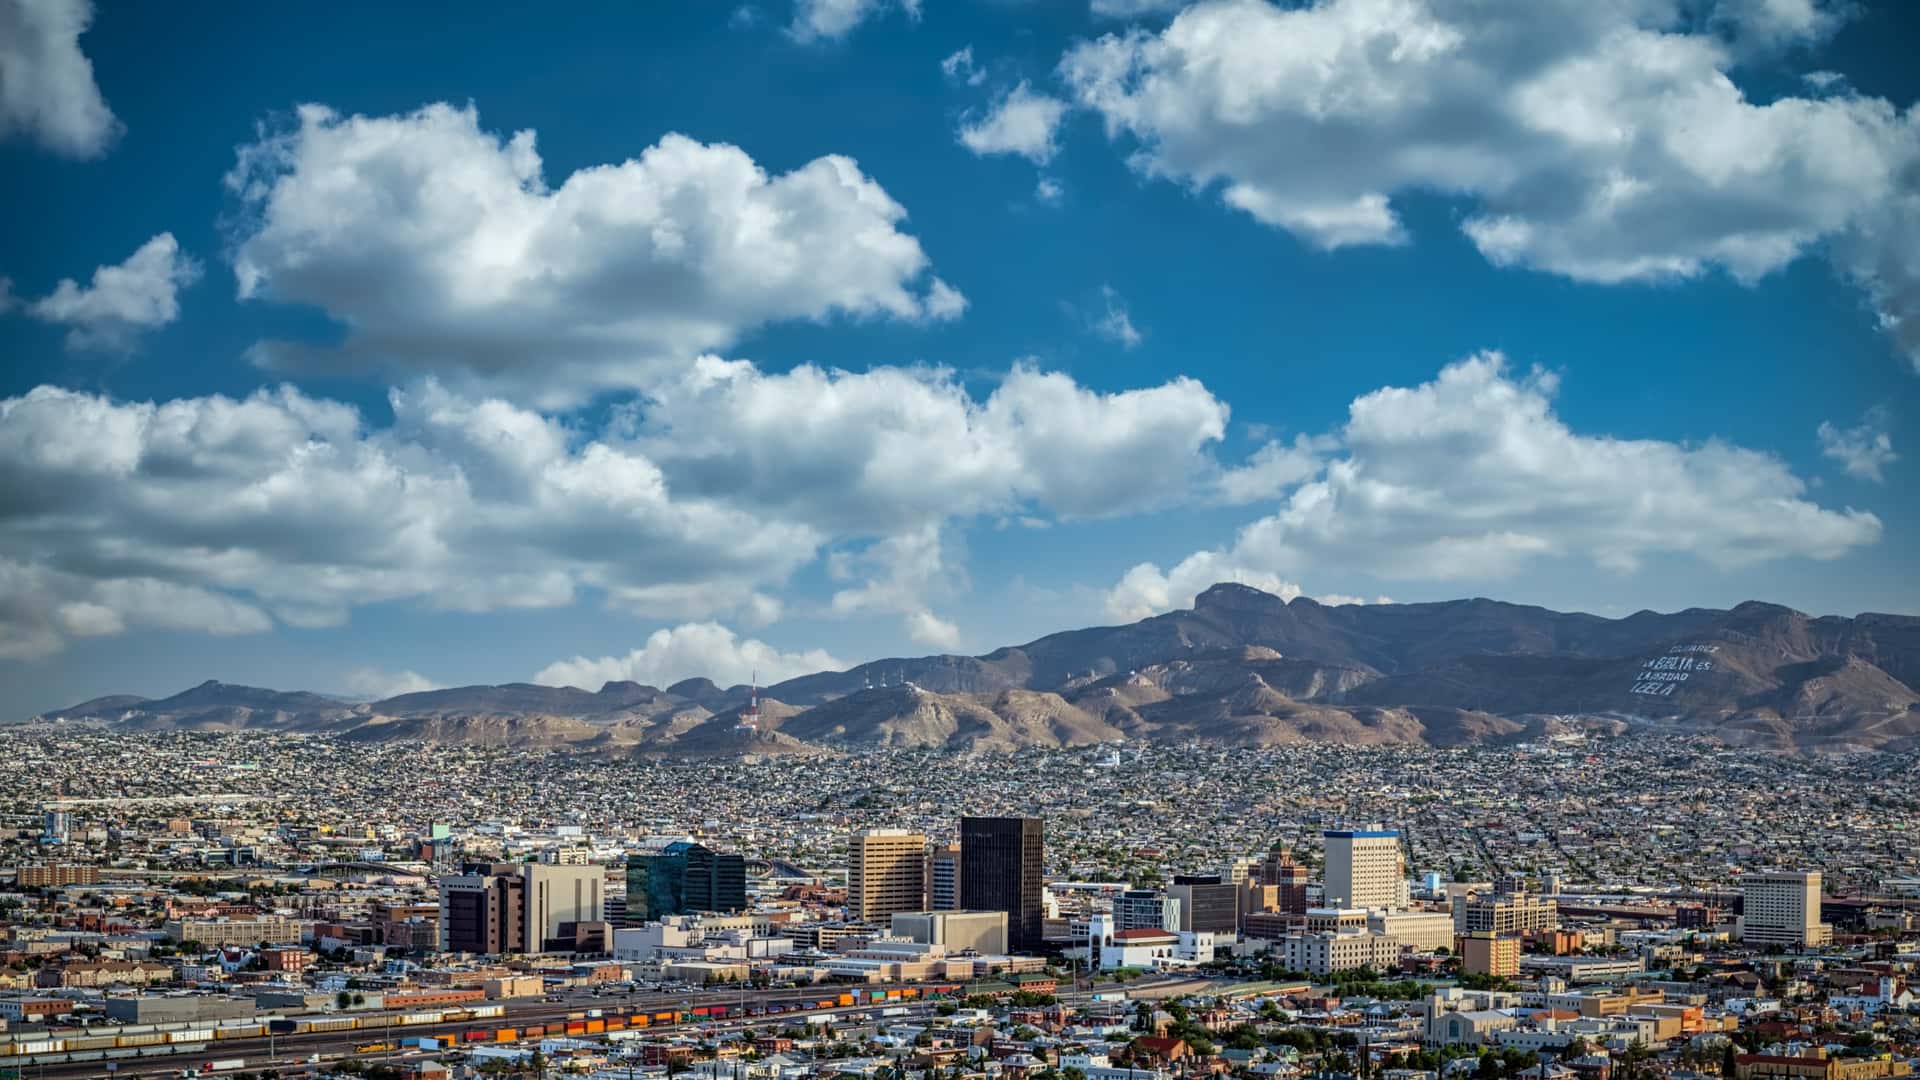 vista panoramica de la ciudad de juarez donde se pueden encontrar sucursales de izzi